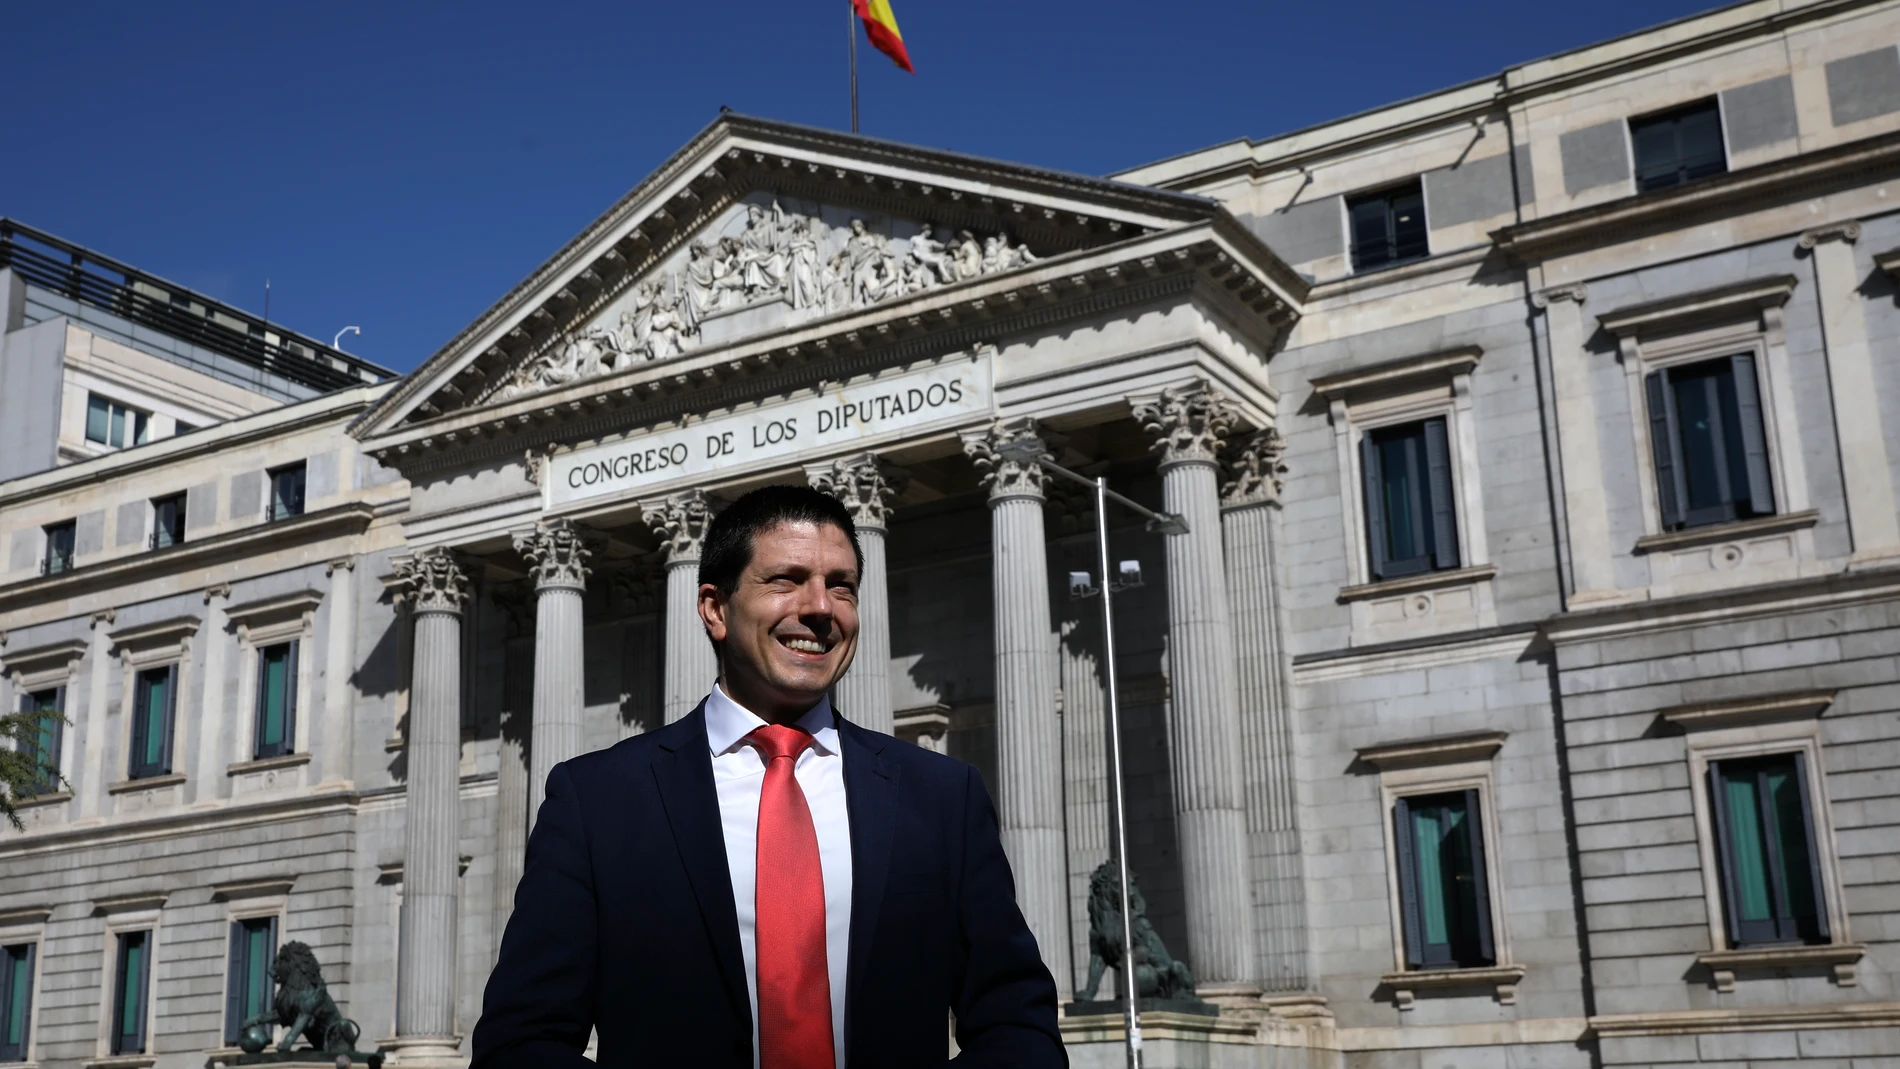 Juan Enrique Gonzálvez posa para LA RAZÓN en la puerta del Congreso de los Diputados